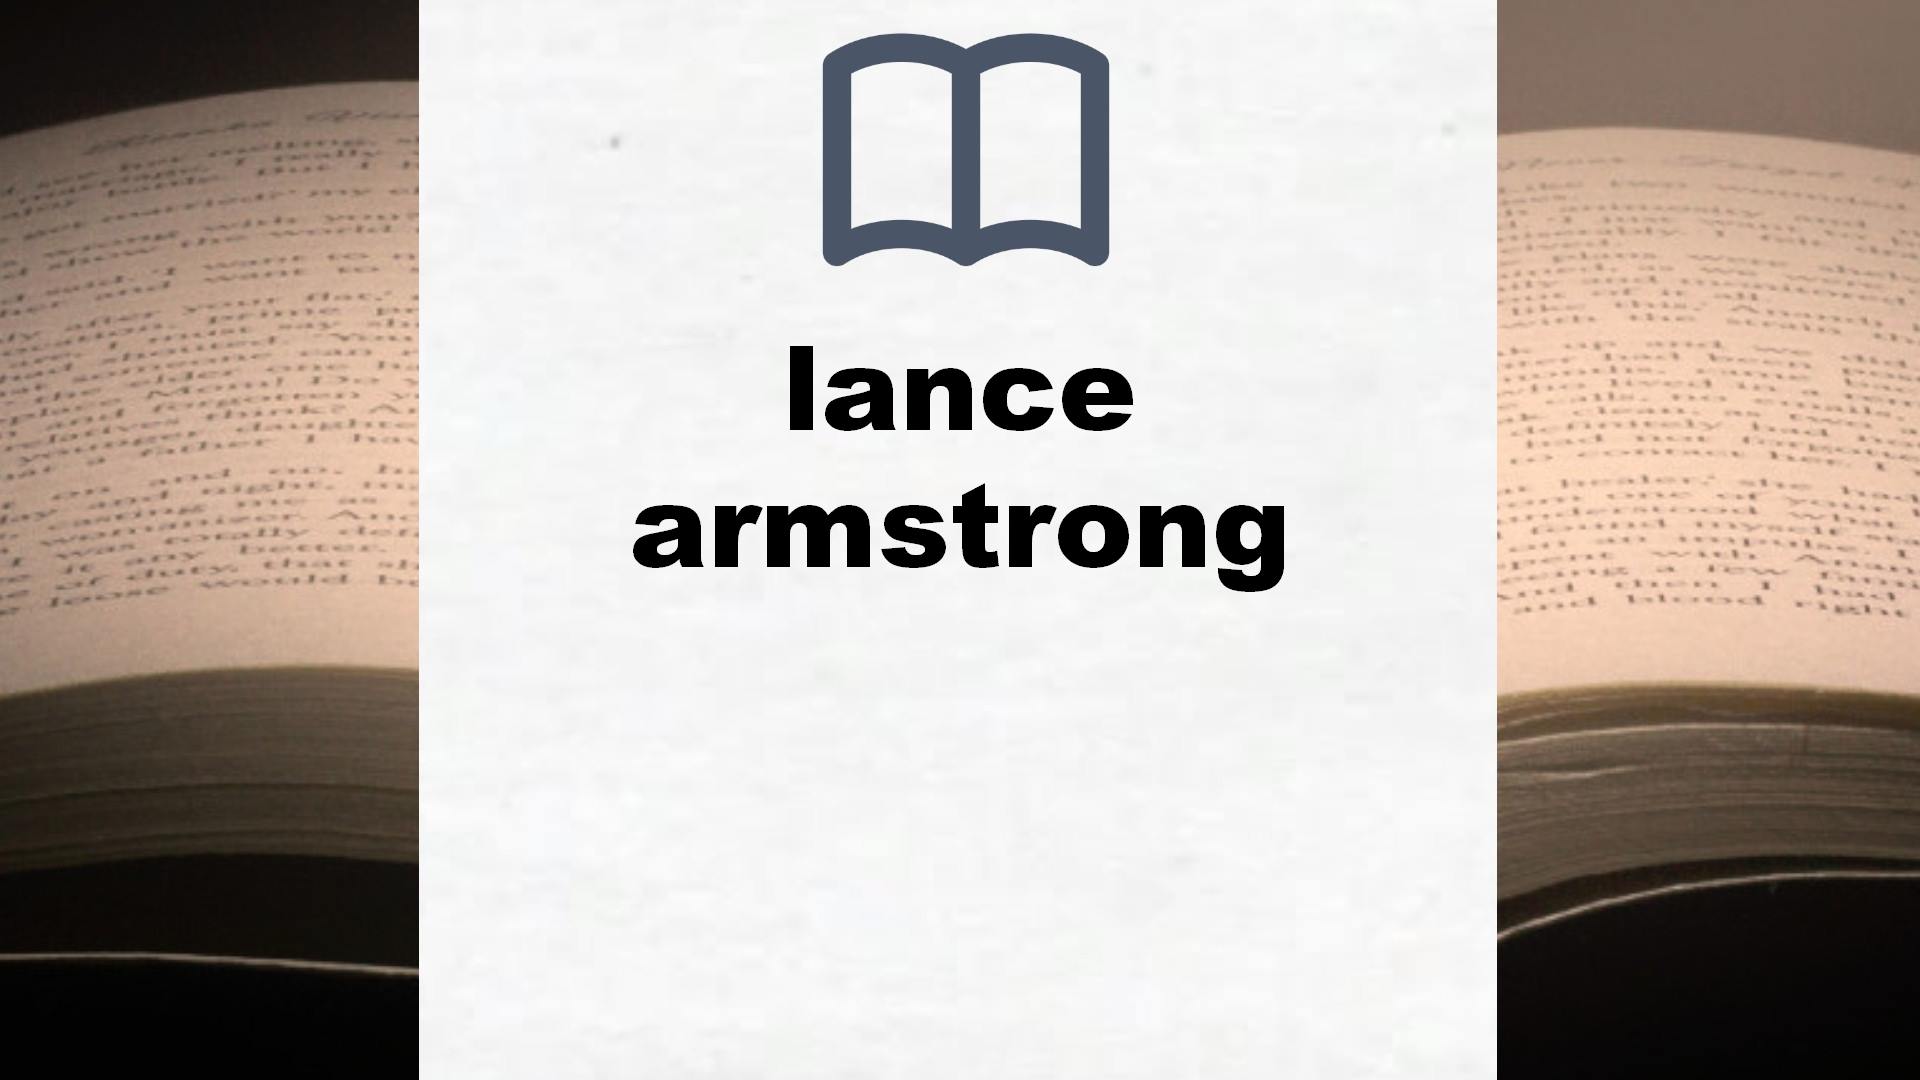 Libros sobre lance armstrong